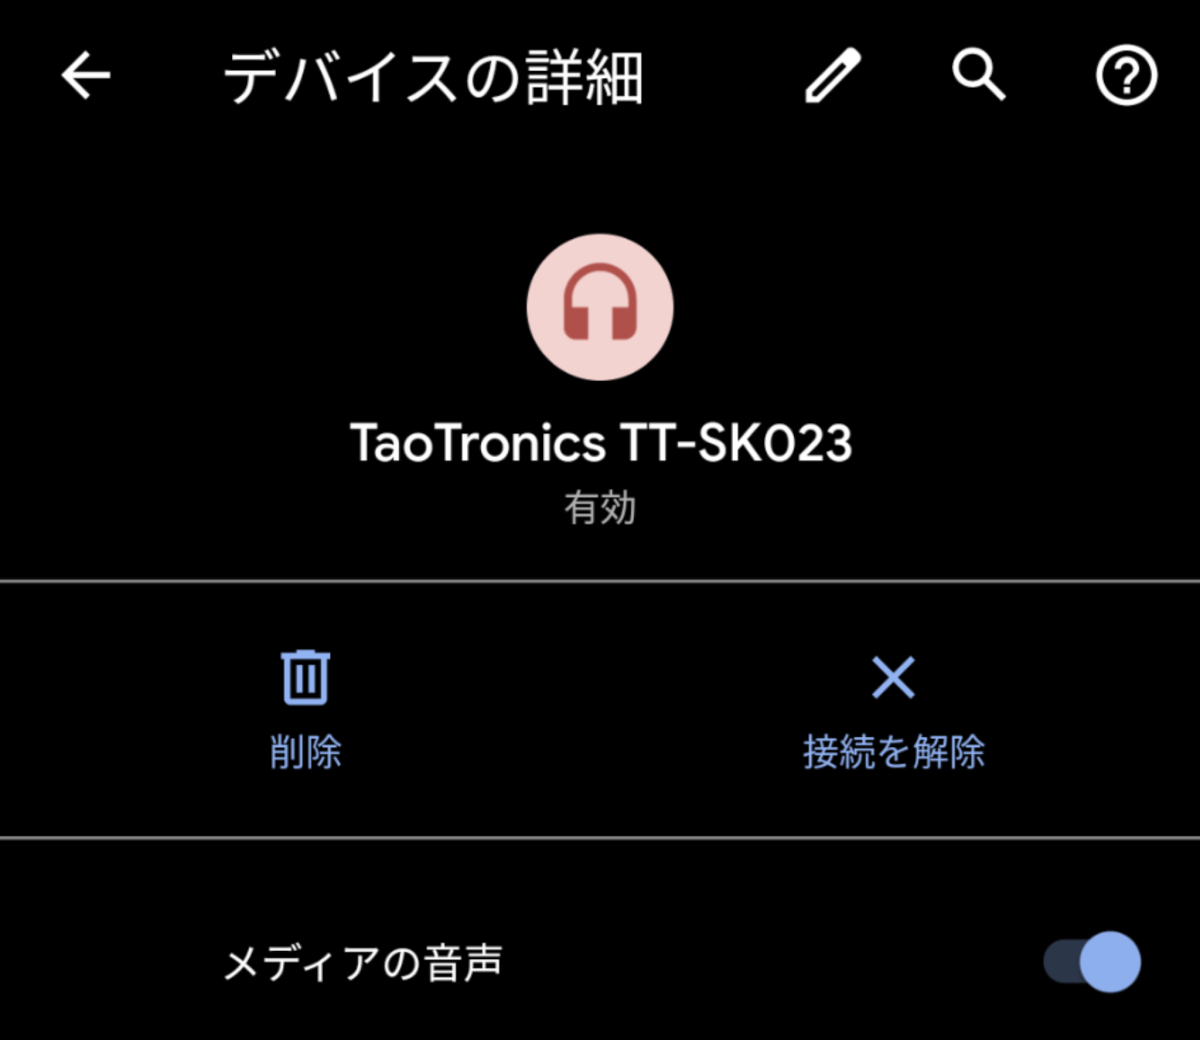 TaoTronics TT-SK023 サウンドバー ペアリング時の表示